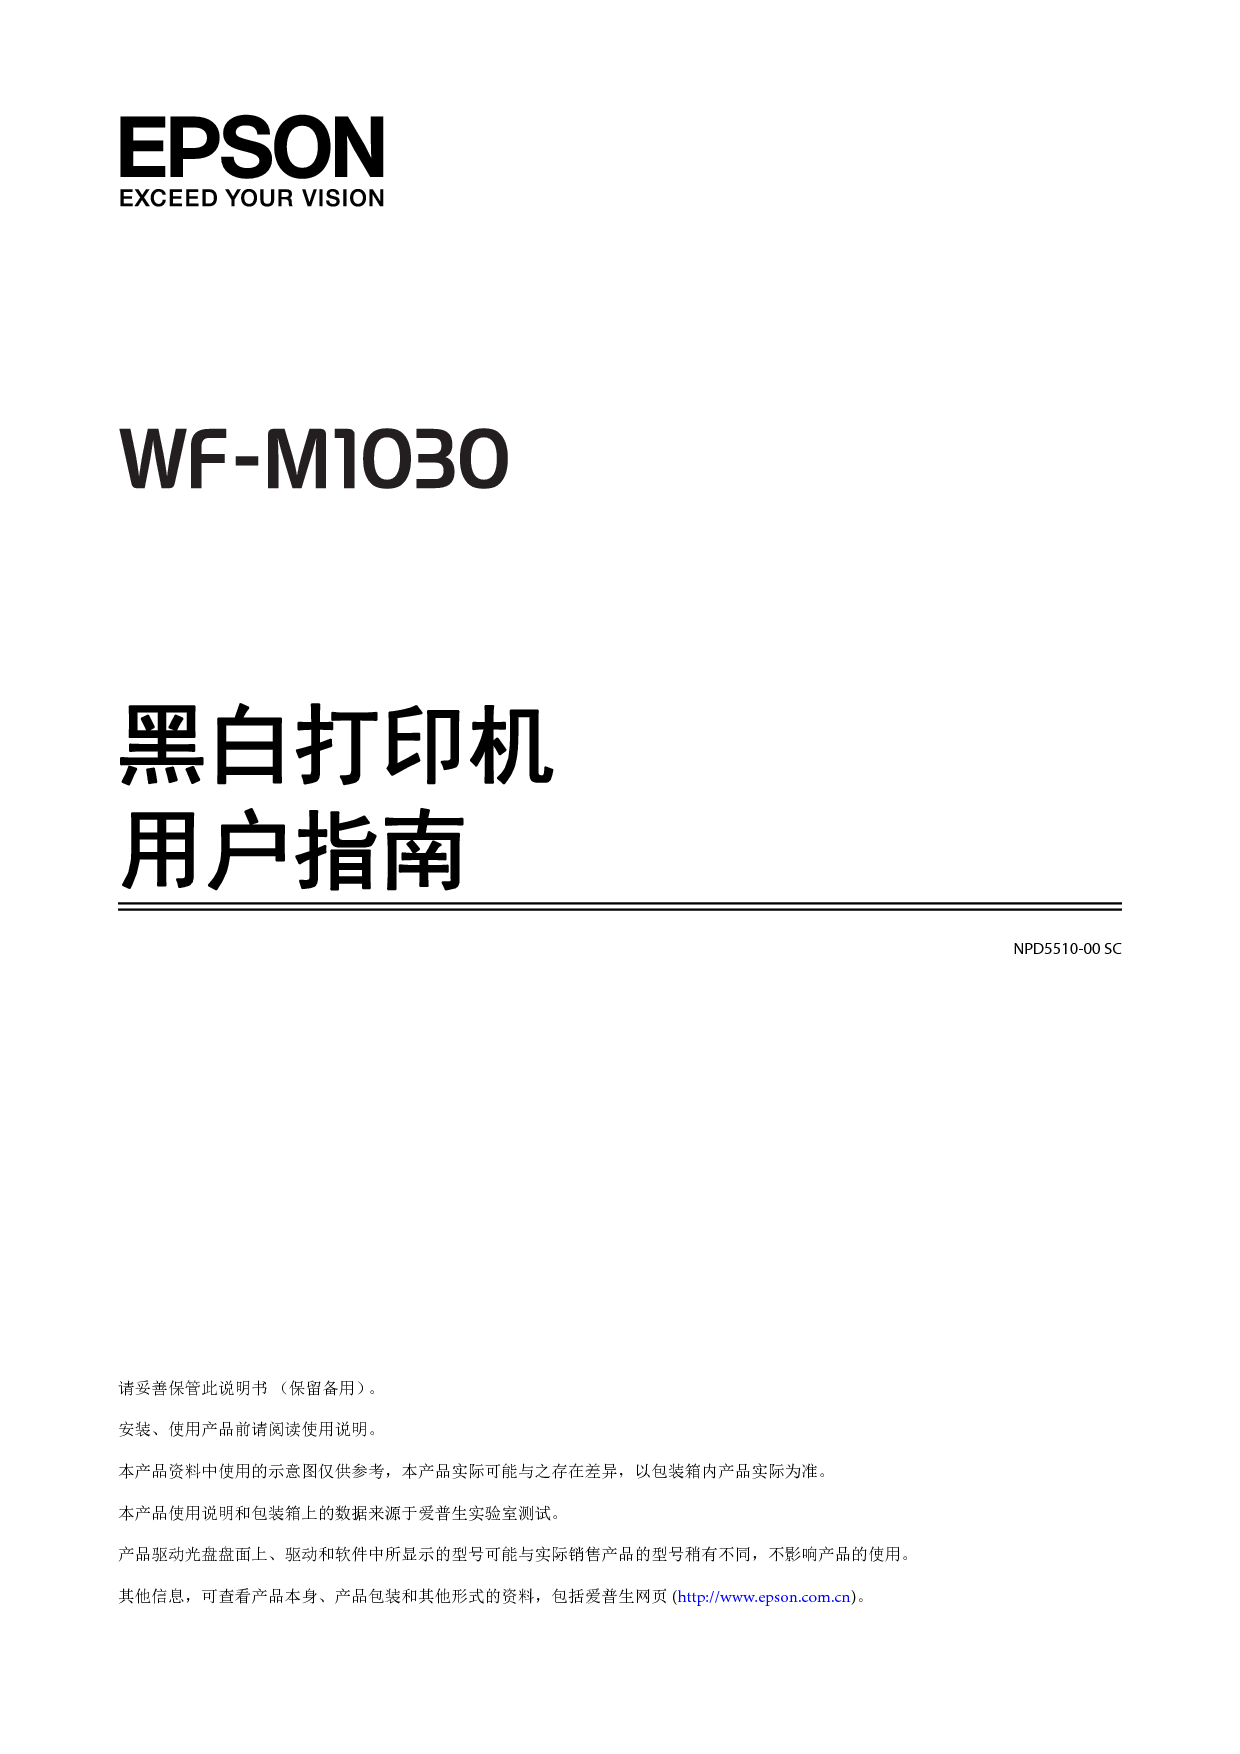 爱普生 Epson WF-M1030 用户指南 封面